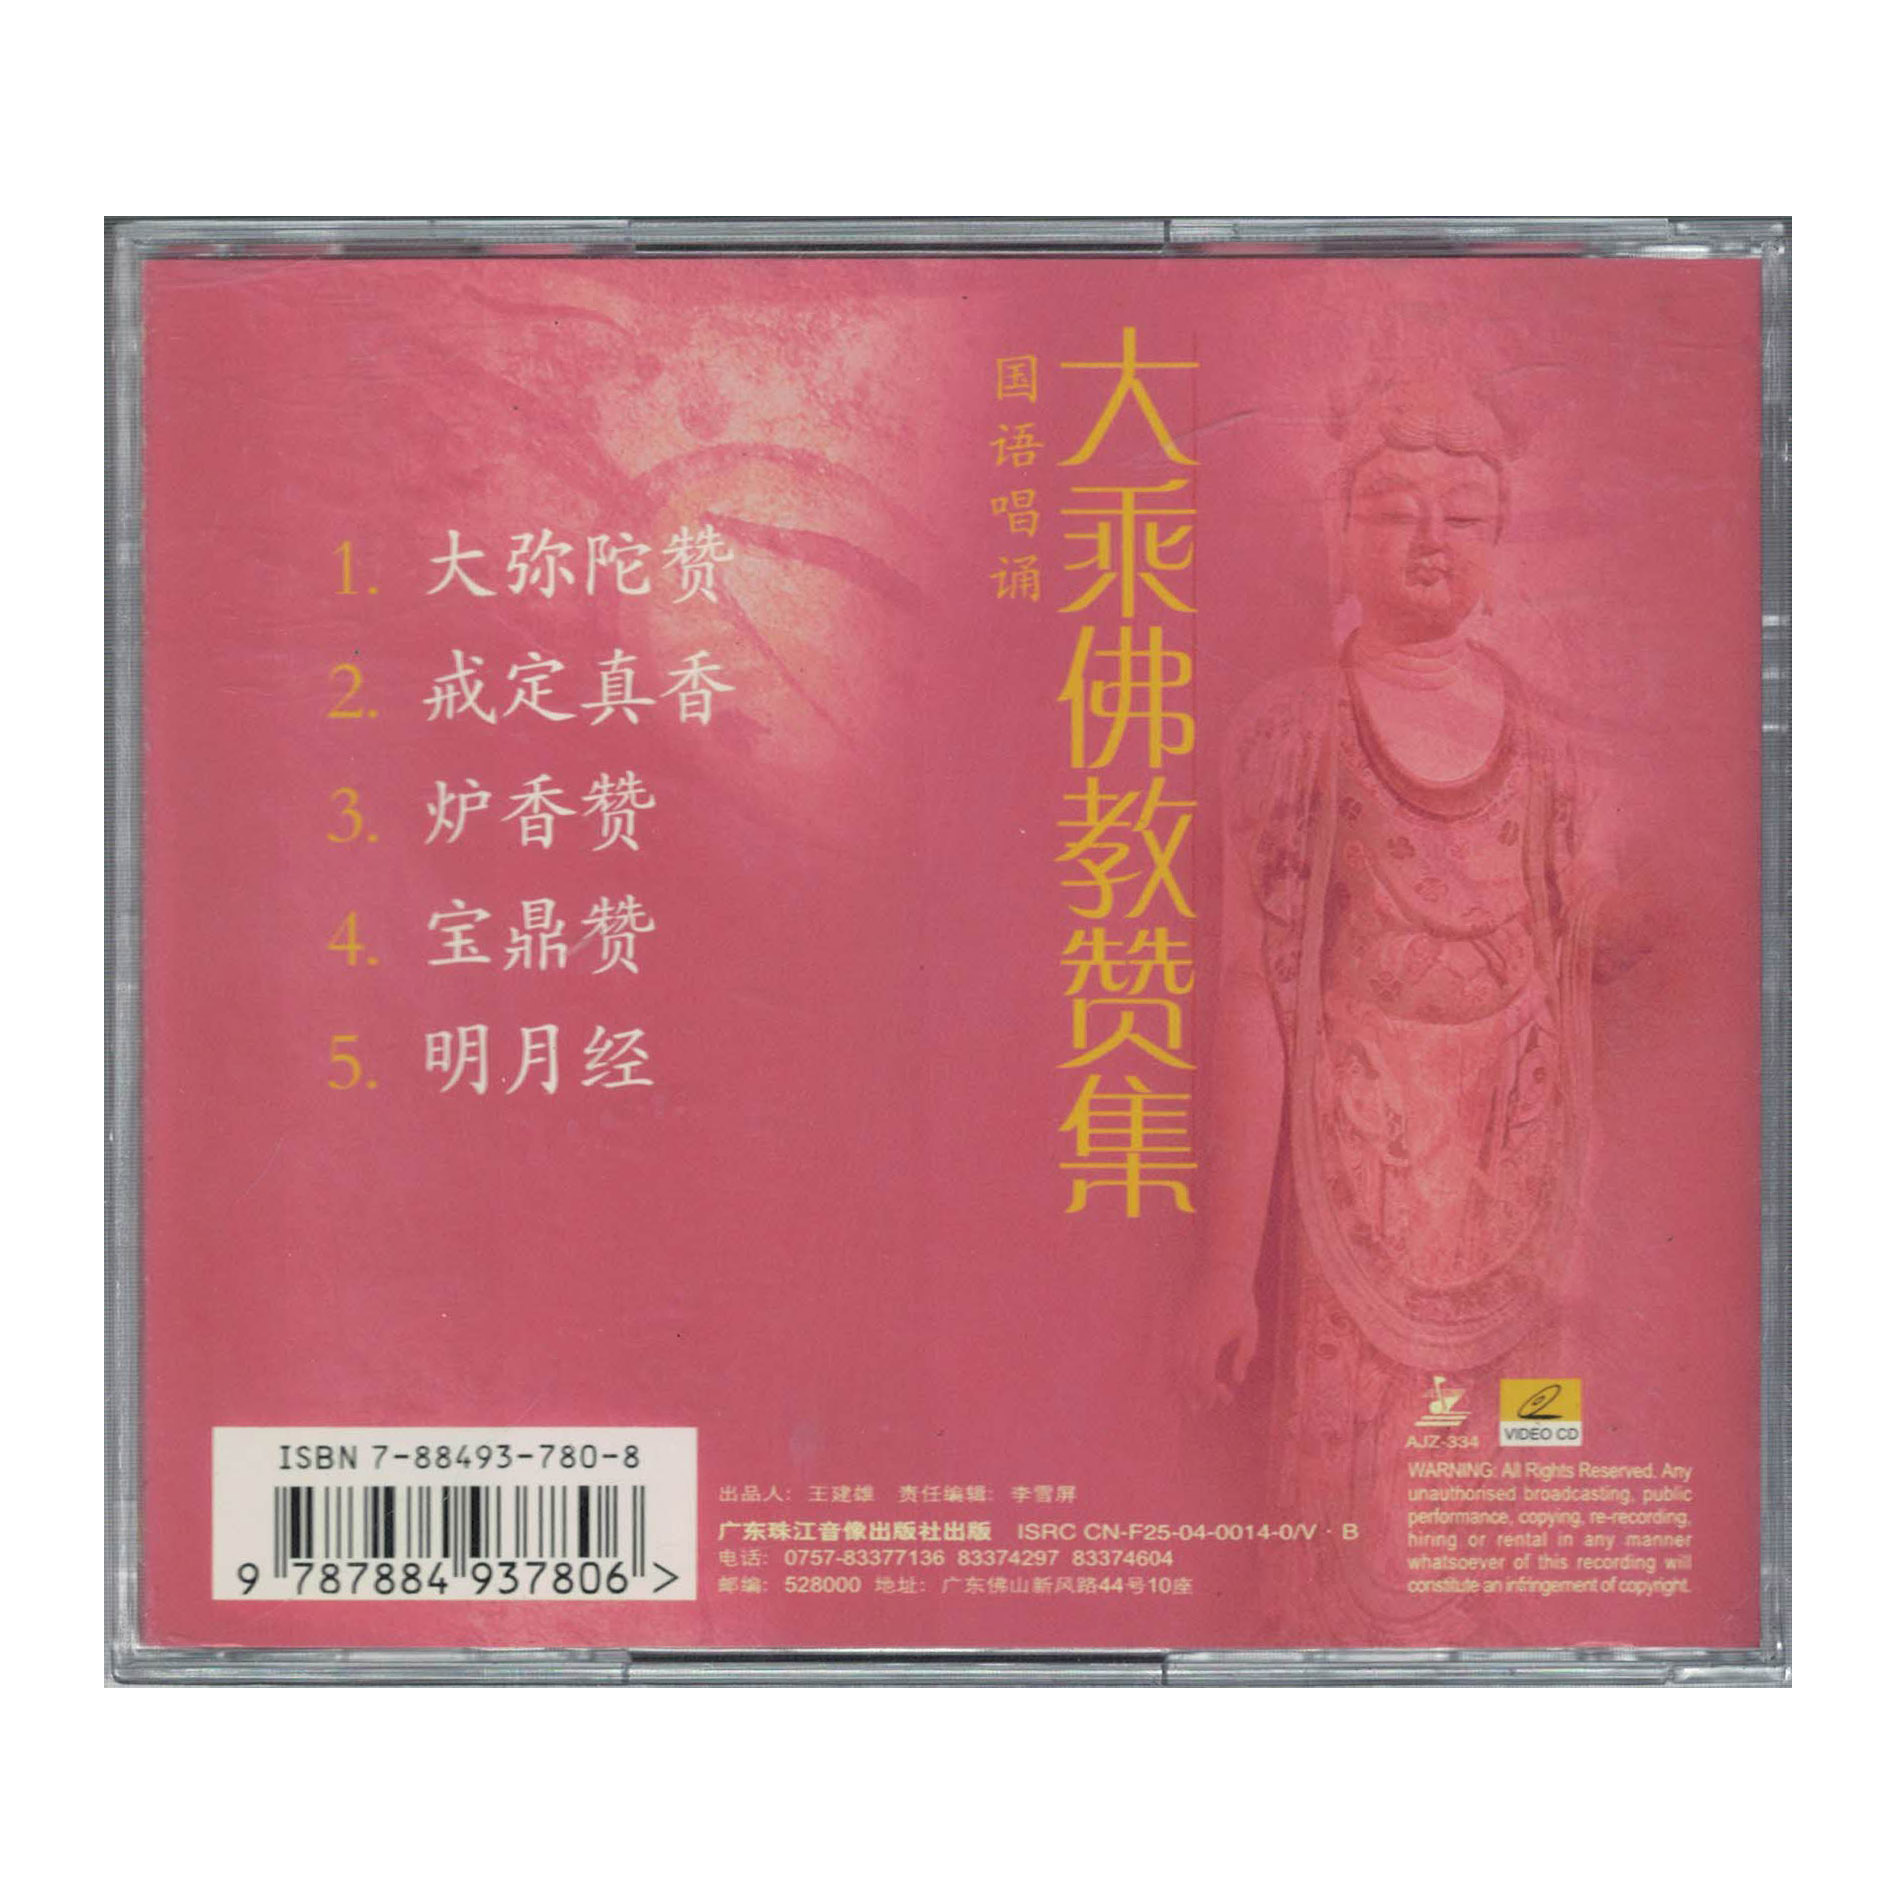 大乘佛教赞集 国语唱诵vcd视频光碟大弥陀赞经典佛教经文音乐唱片